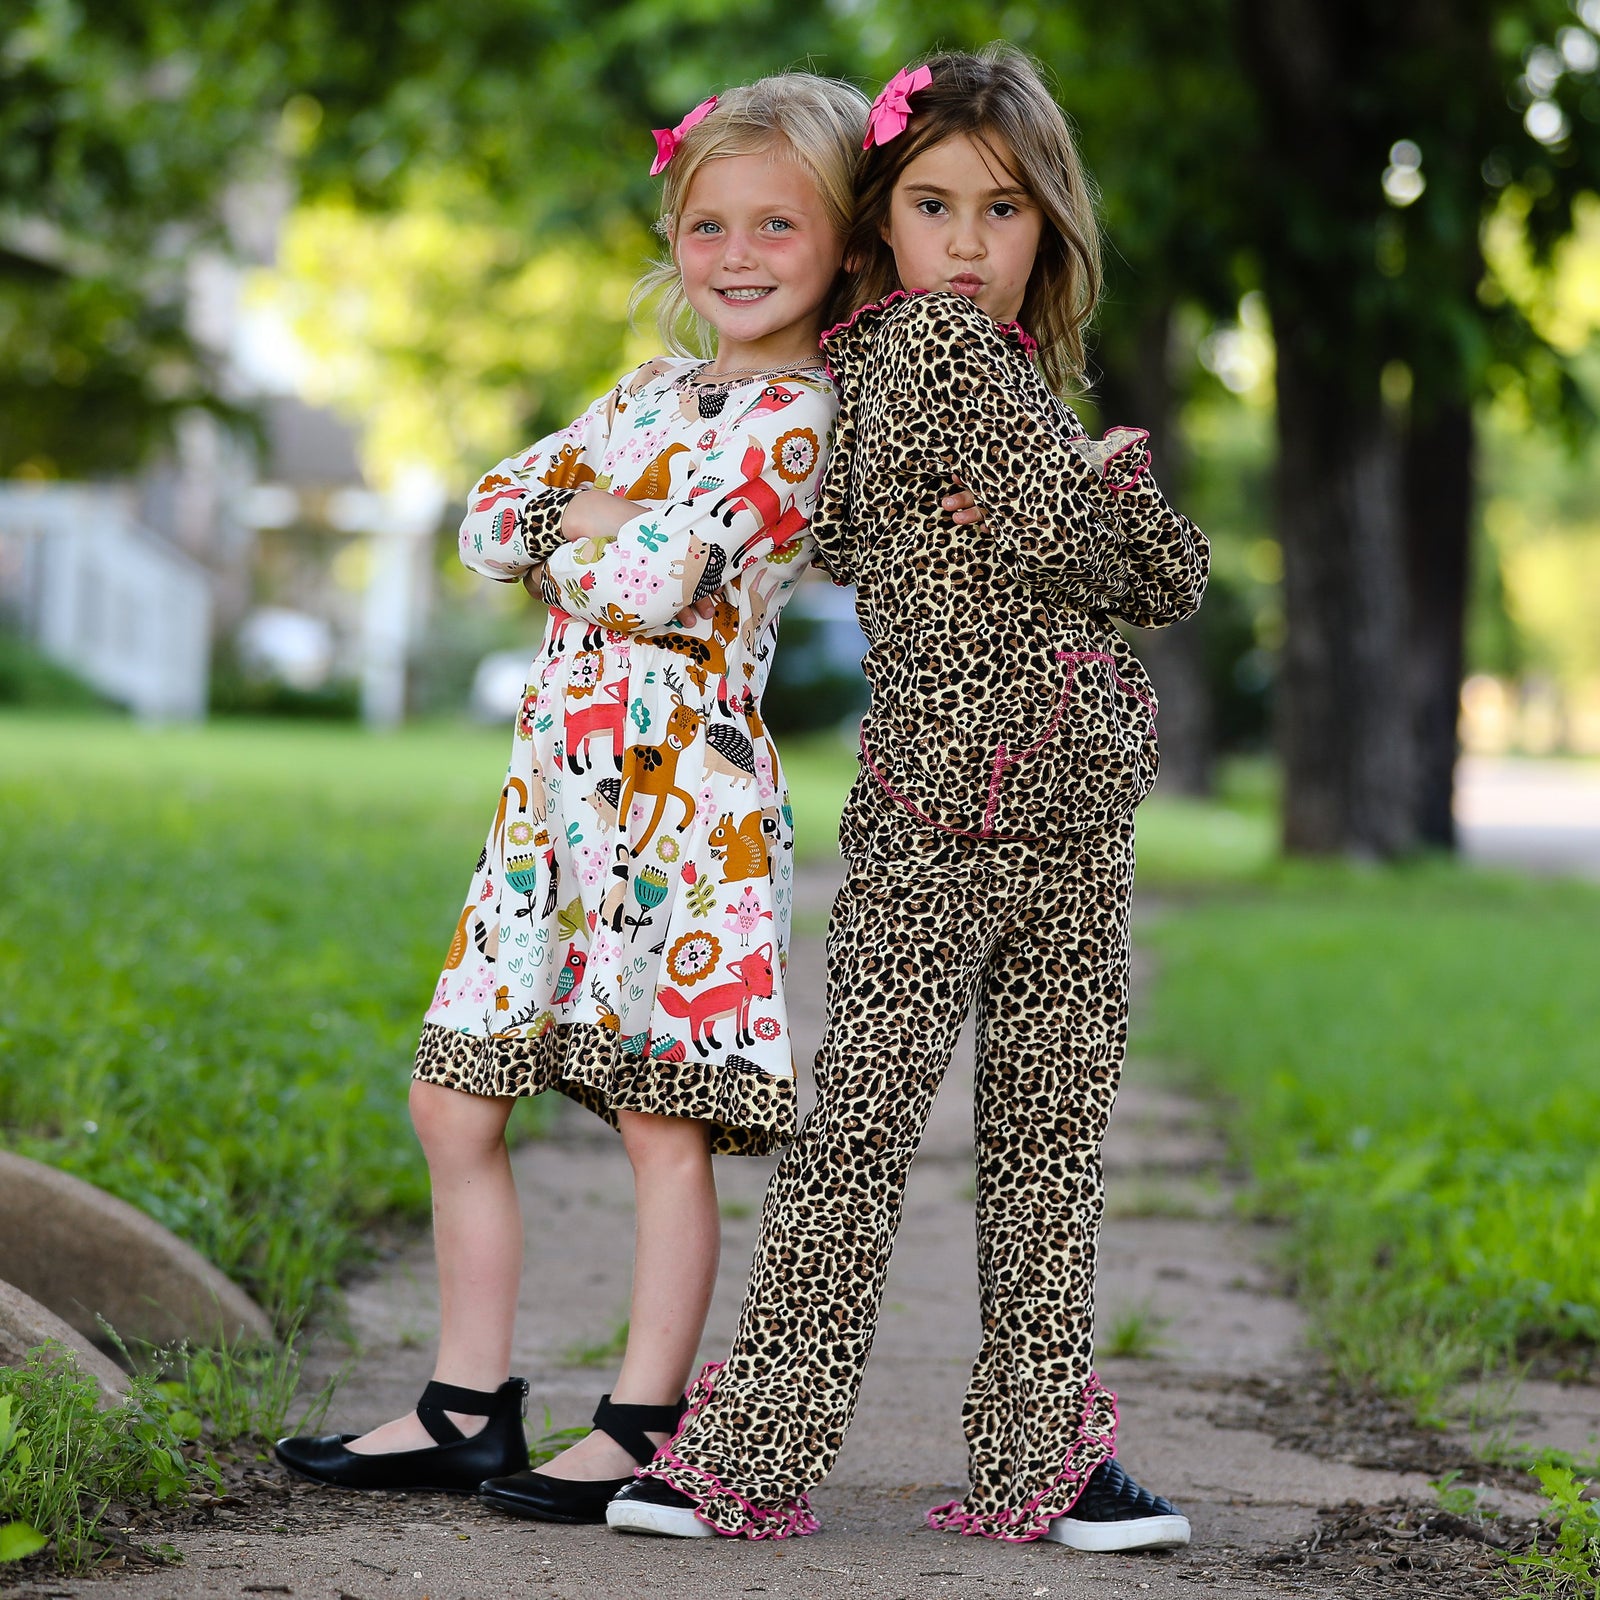 Long Sleeve Forest Friends Fall Little & Big Girls Dress by AnnLoren